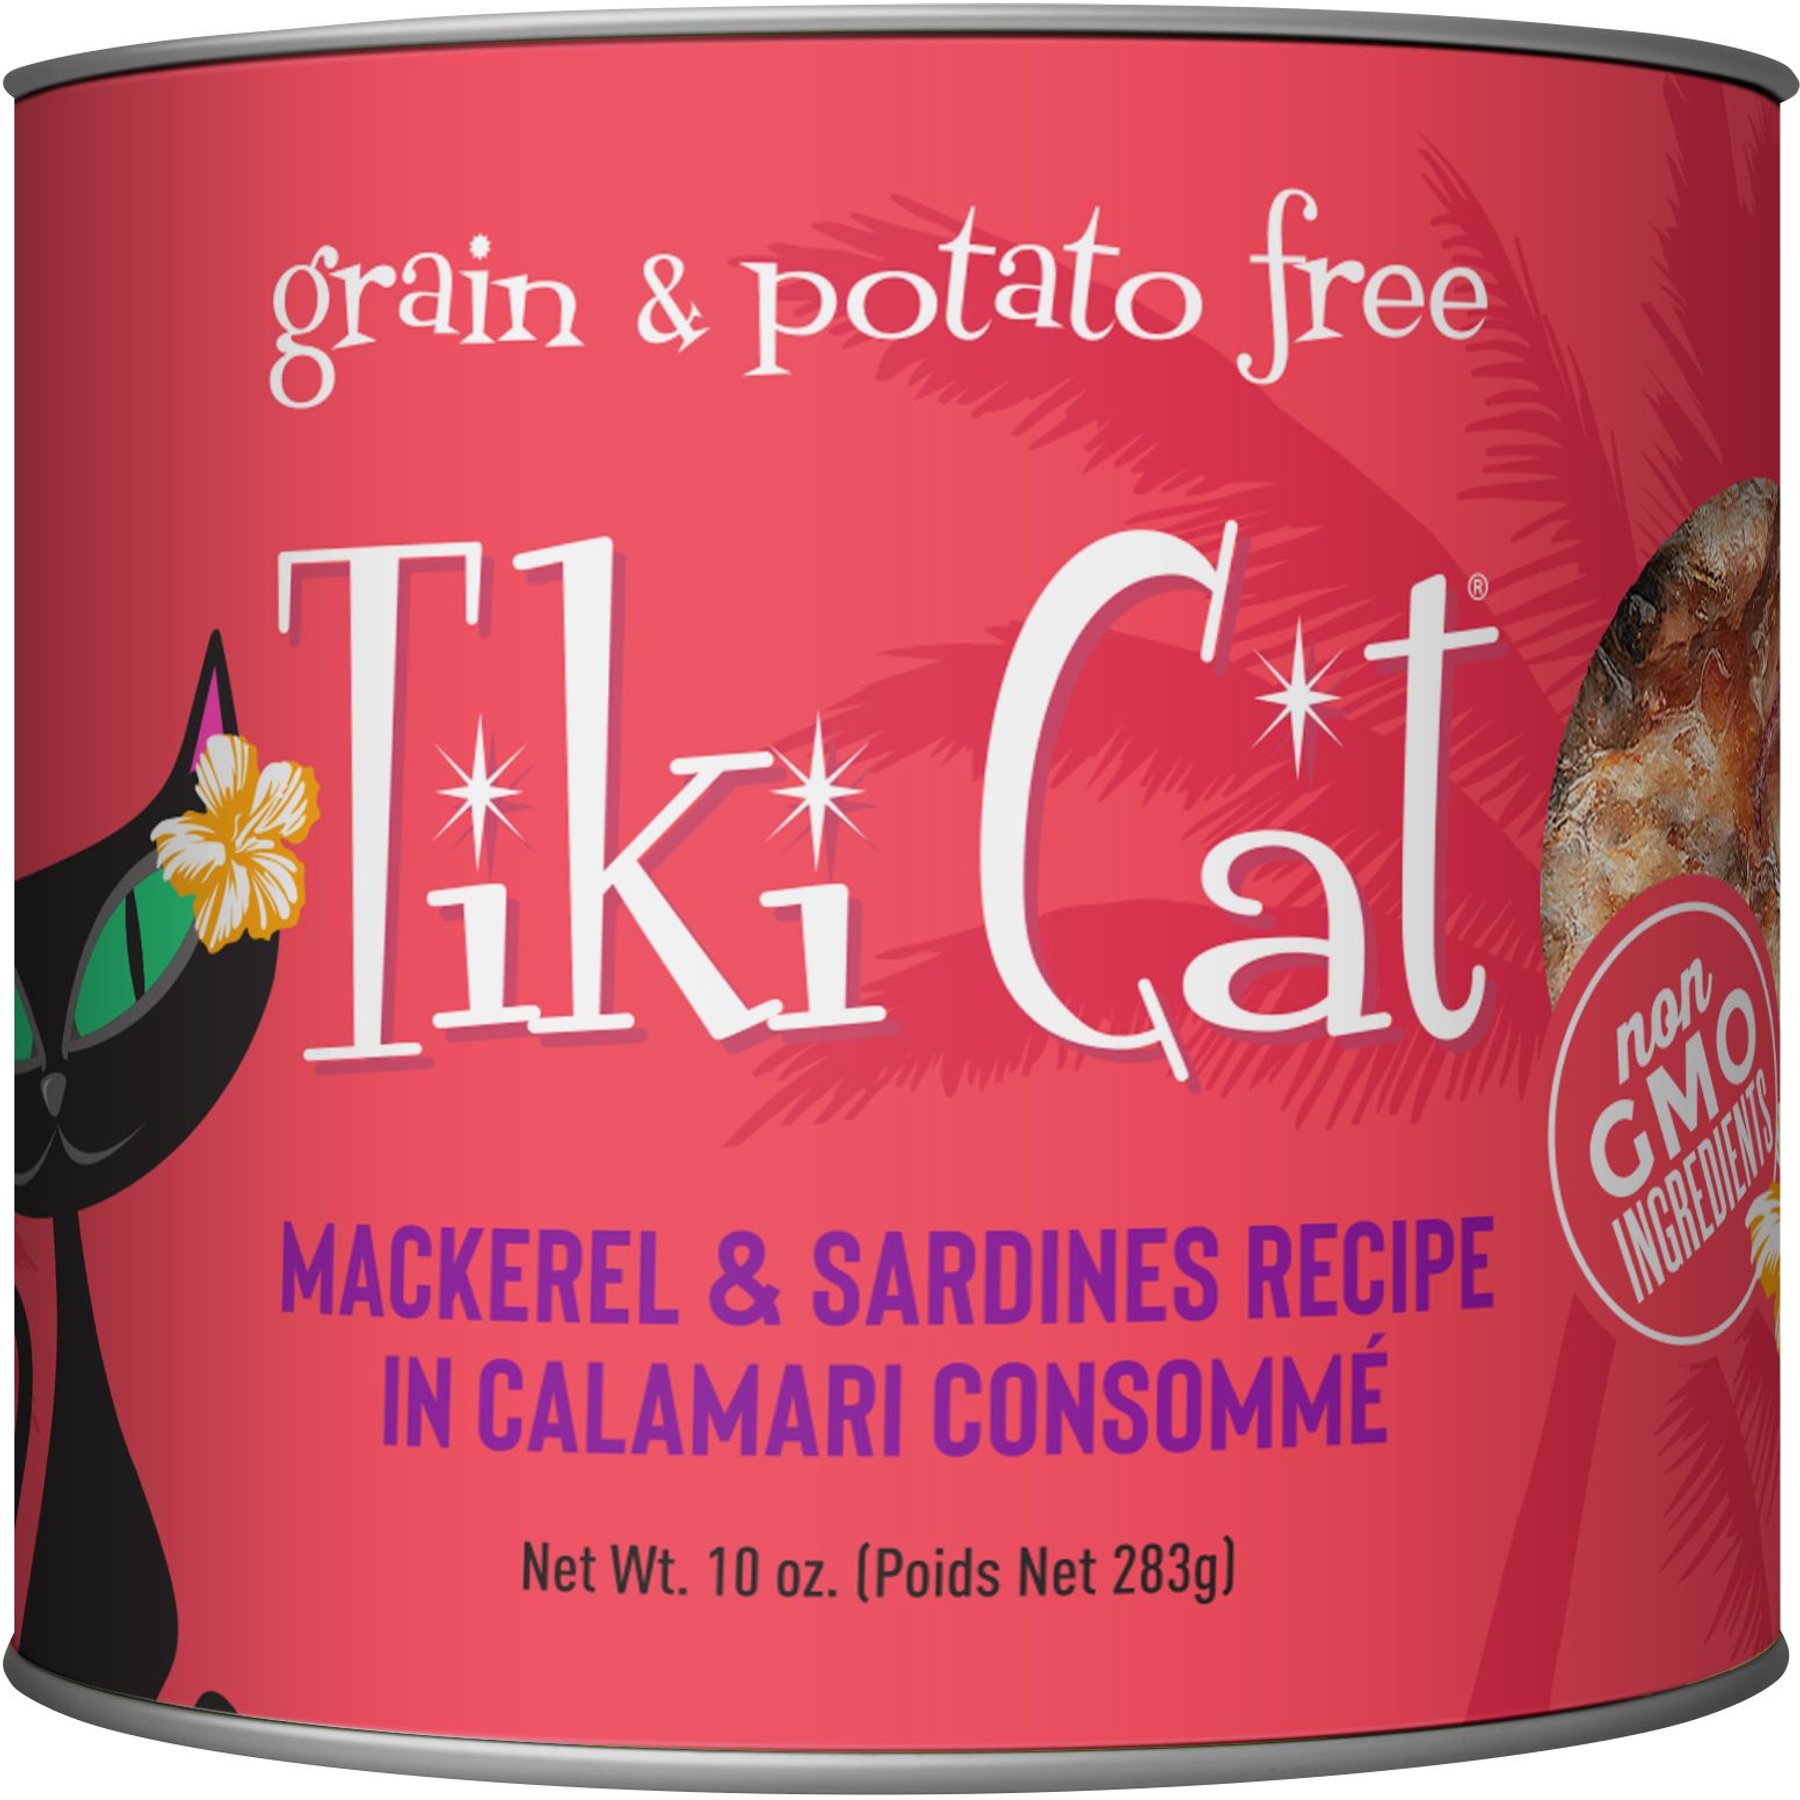 Tiki Cat Essentials Trout & Menhaden Fish Meal Recipe #6 Wet Cat